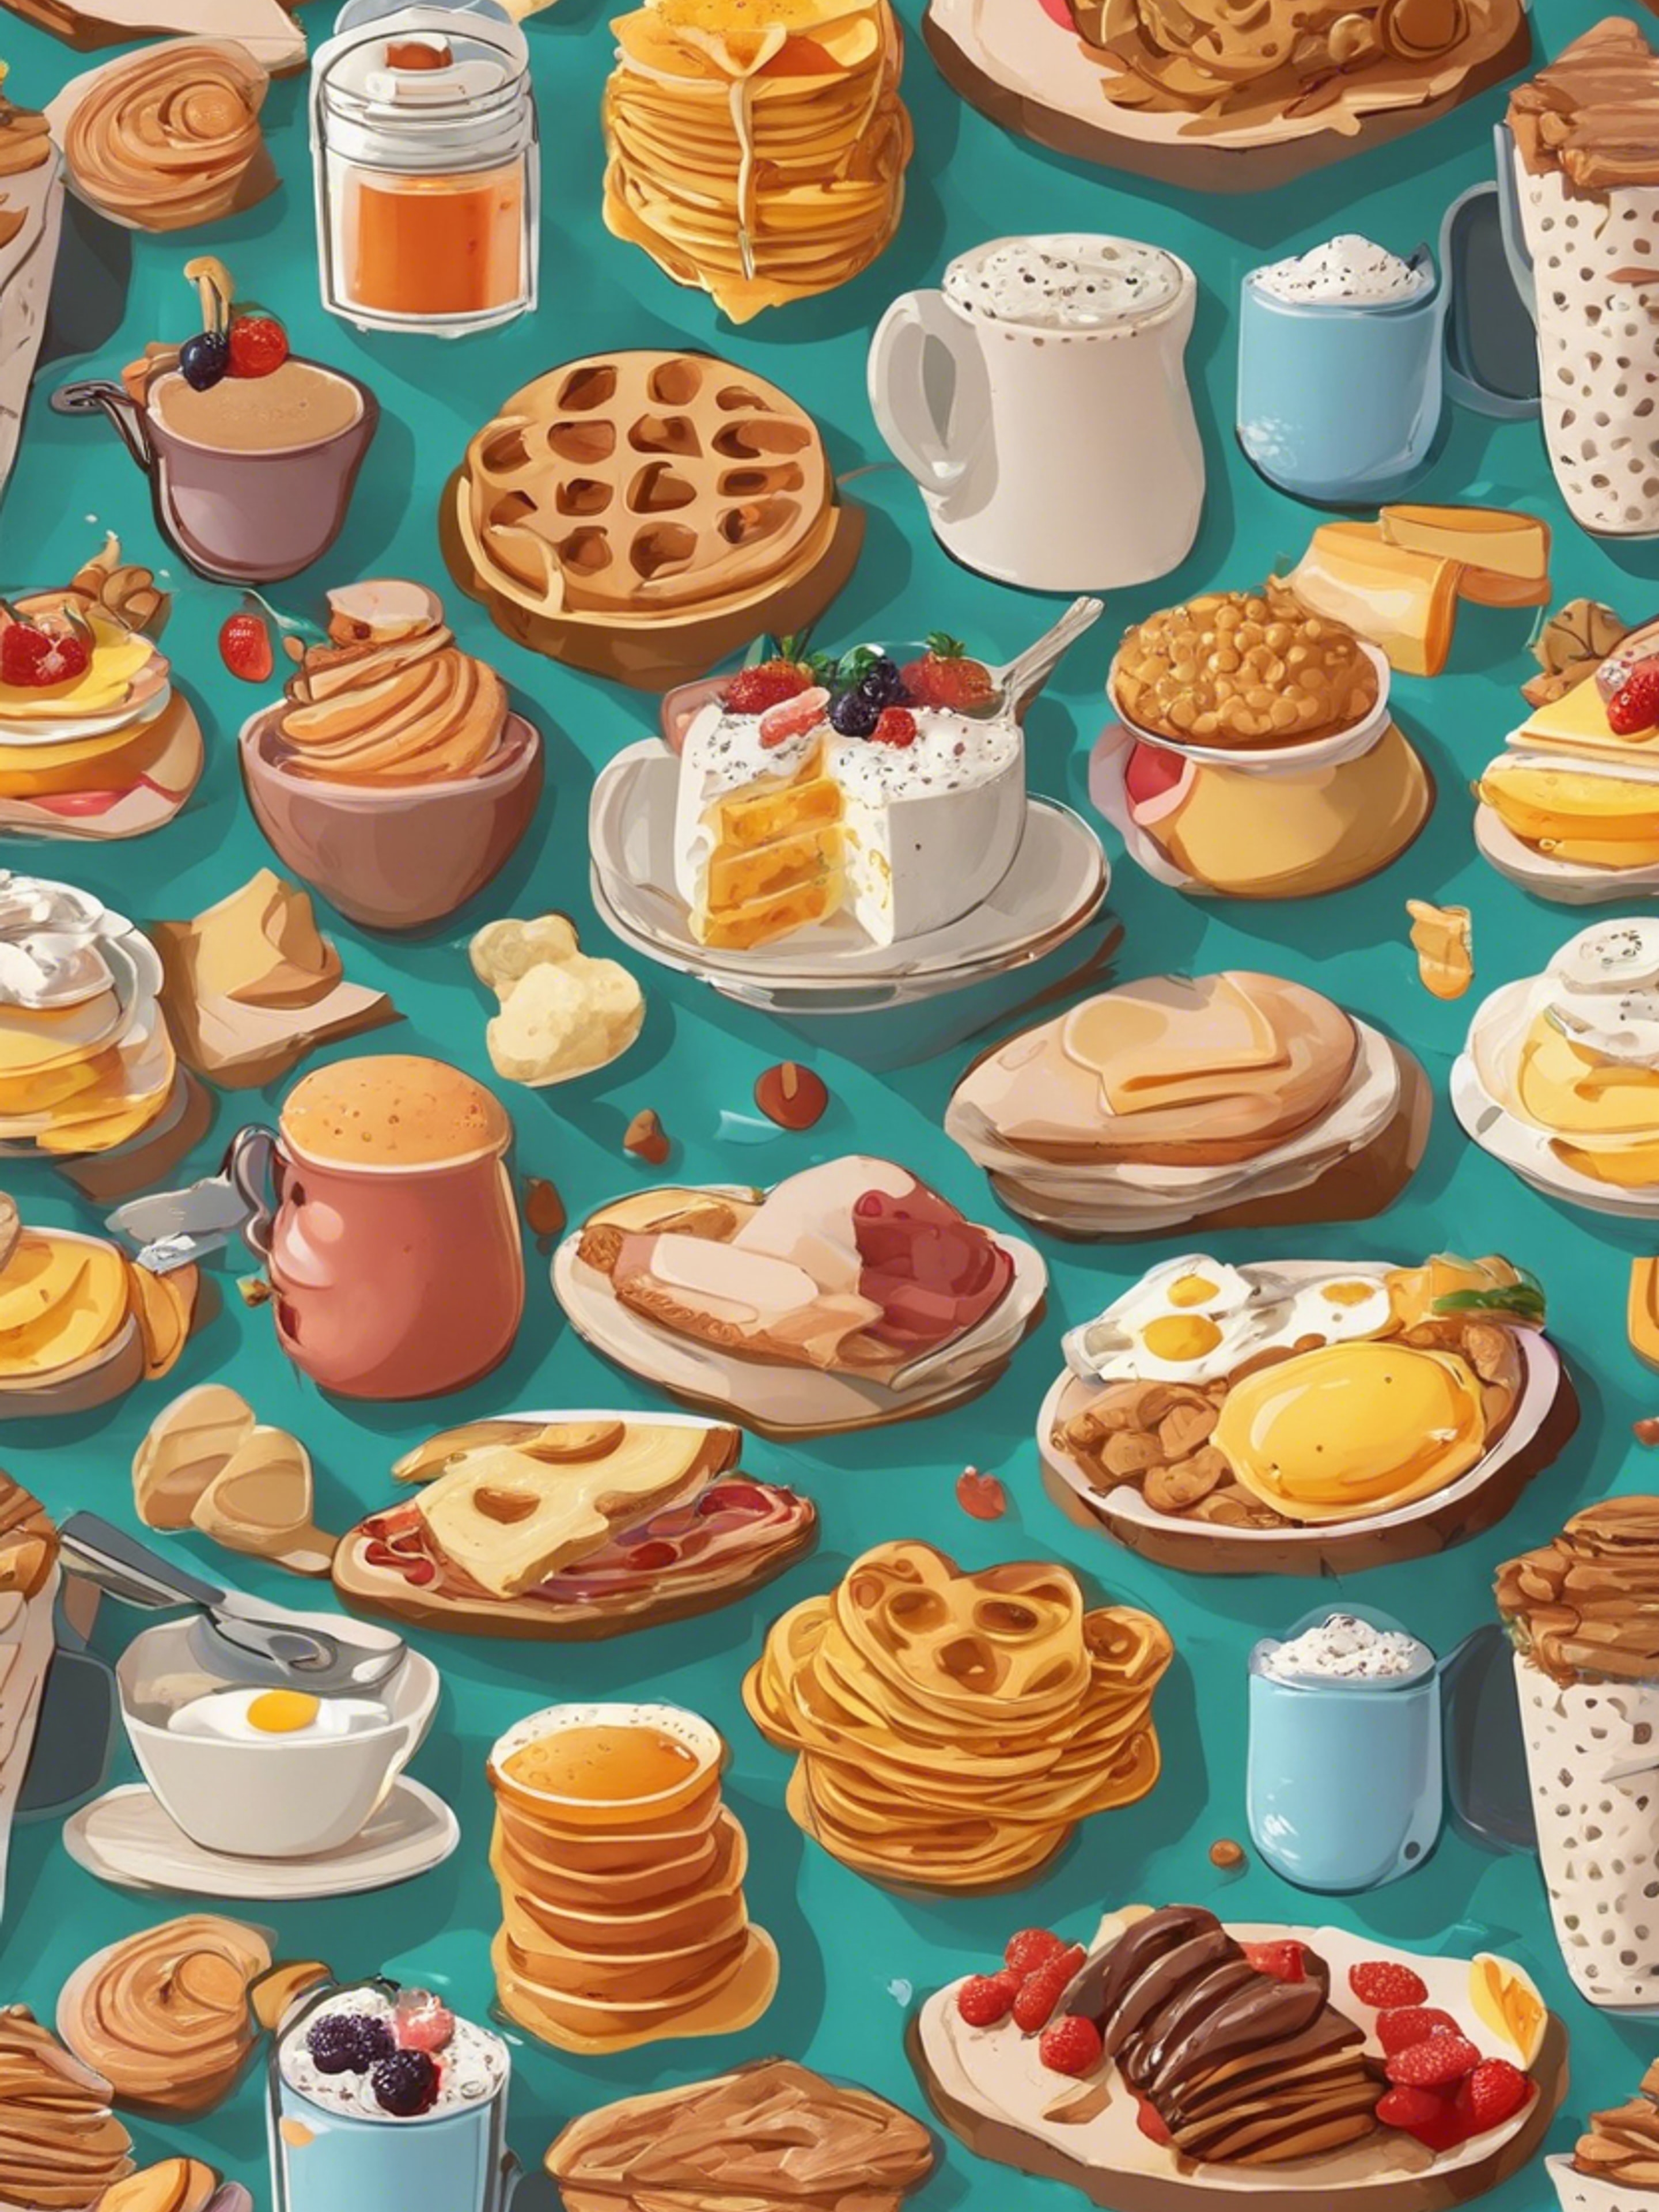 Cartoonish breakfast food items in an appealing, kid-friendly pattern. Hình nền[fa493d8b255444e69f8d]